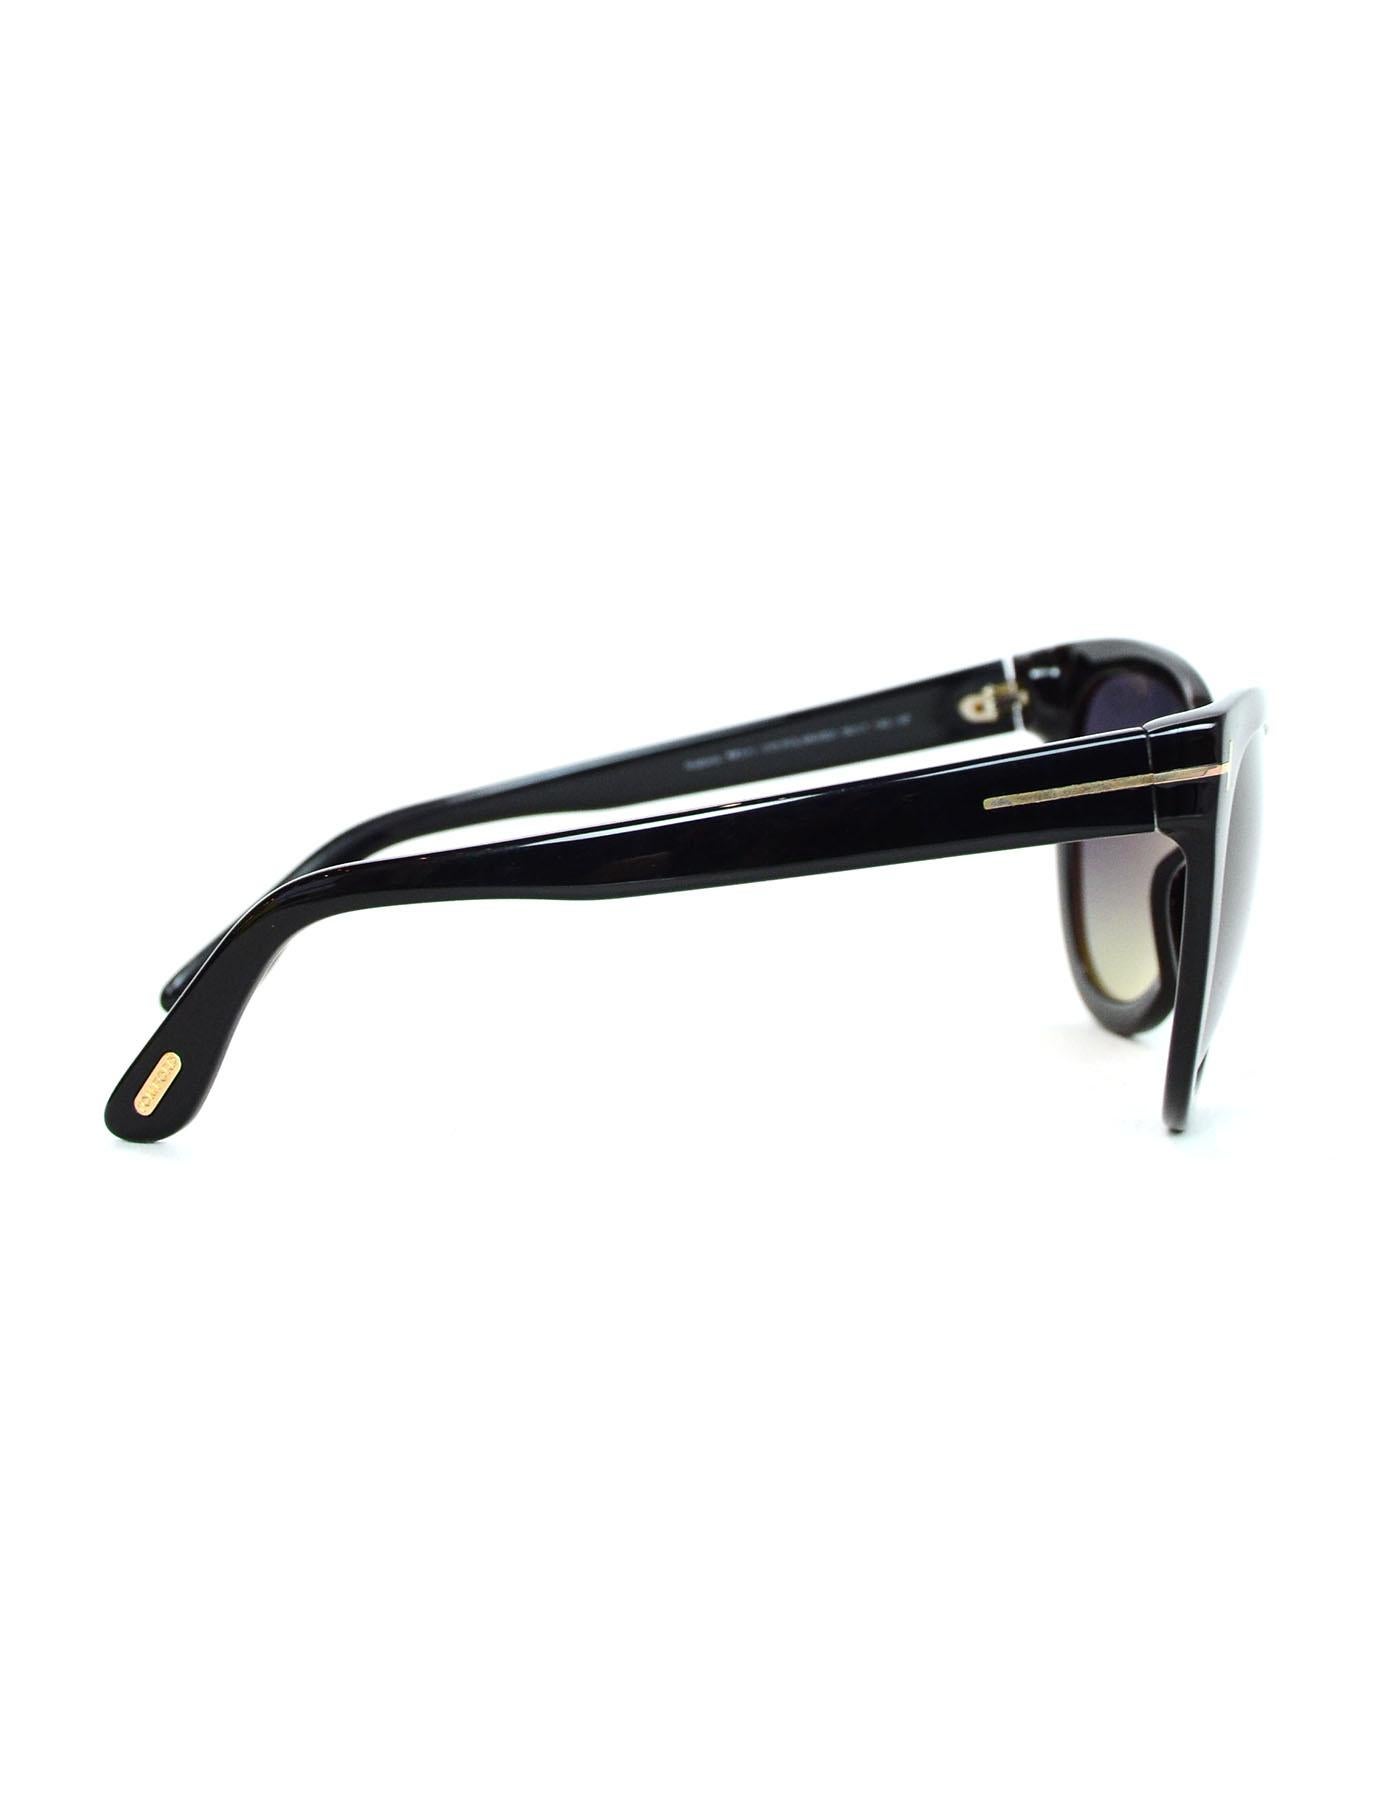 tom ford sunglasses polarized lenses